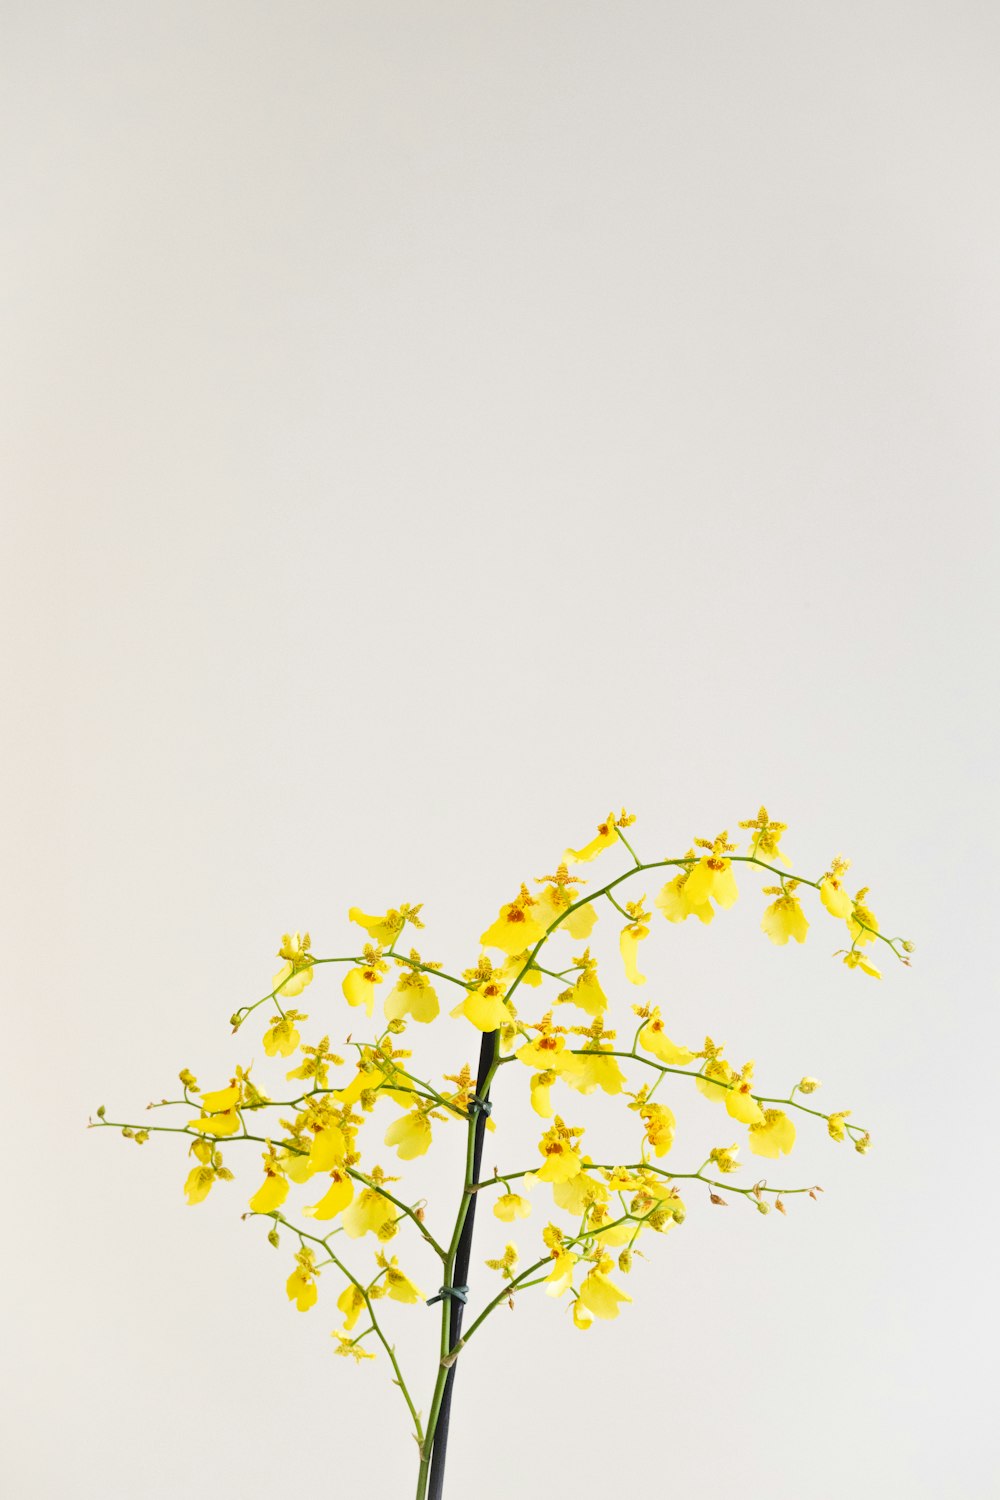 eine Vase gefüllt mit gelben Blumen auf einem Tisch